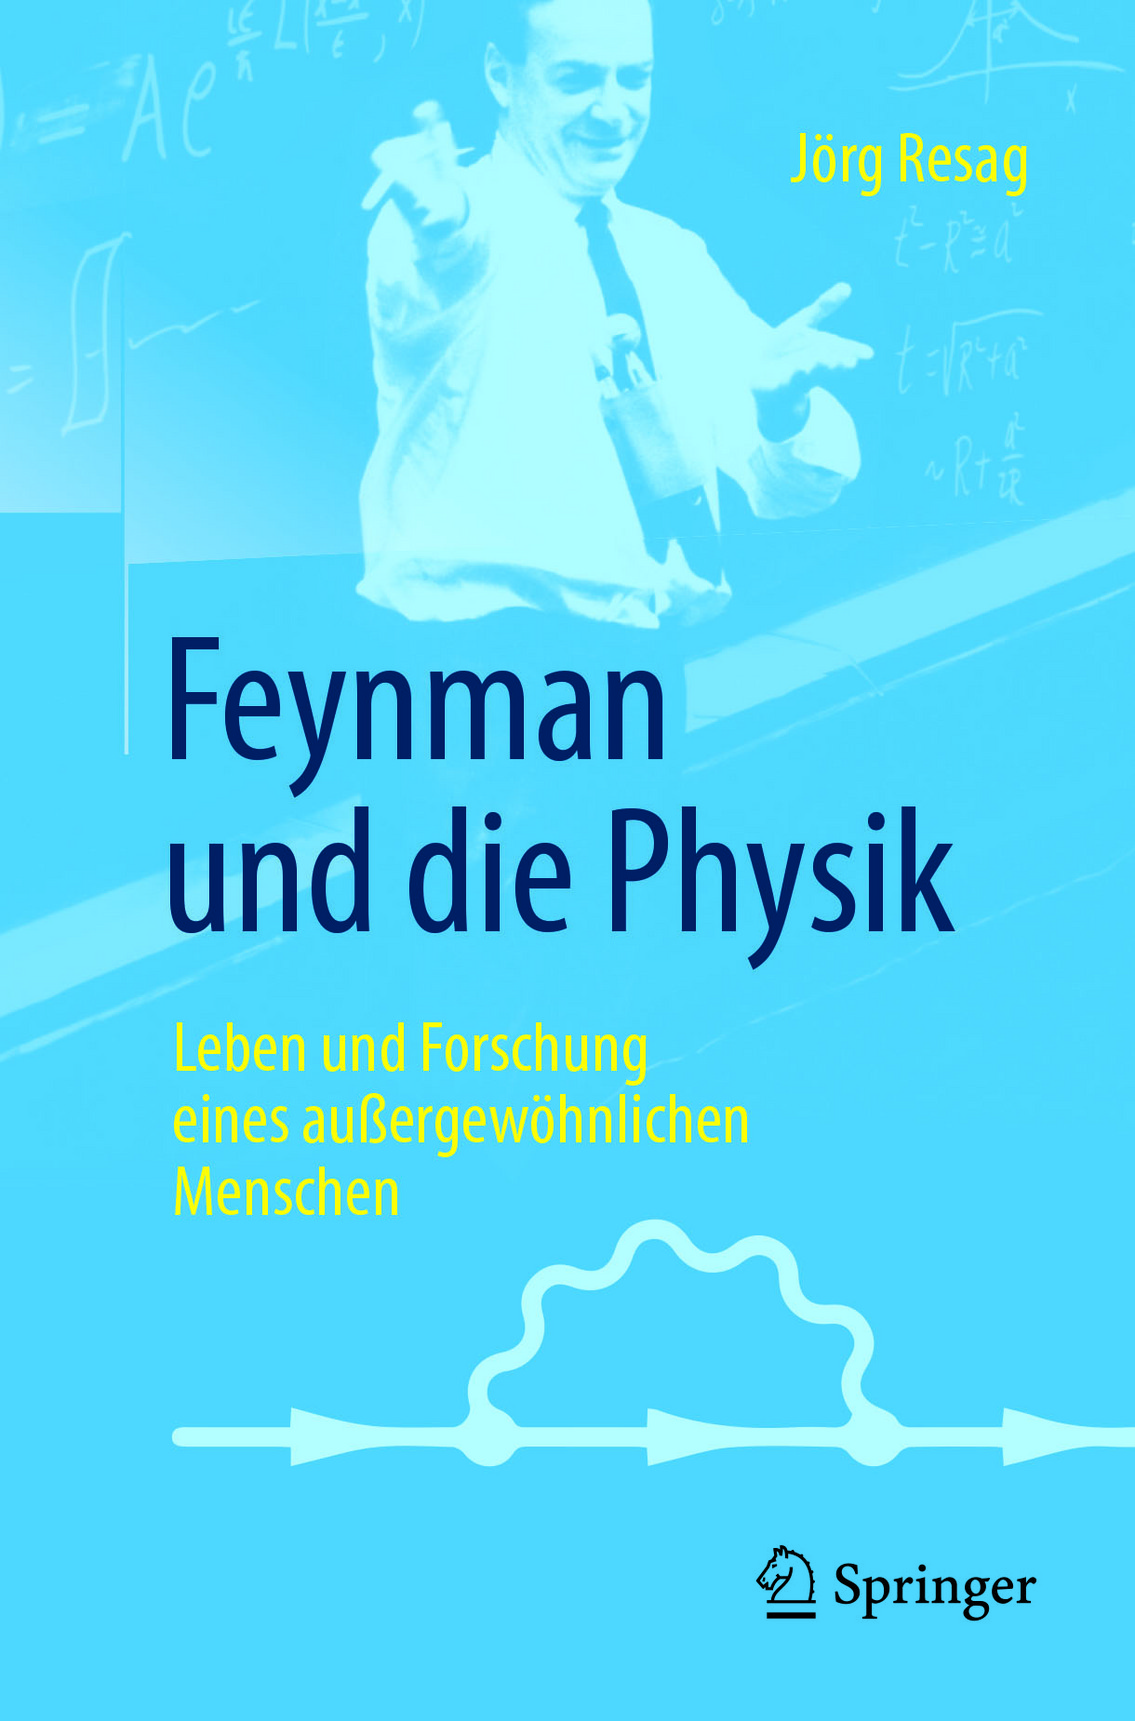 Feynman und die Physik by Jörg Resag